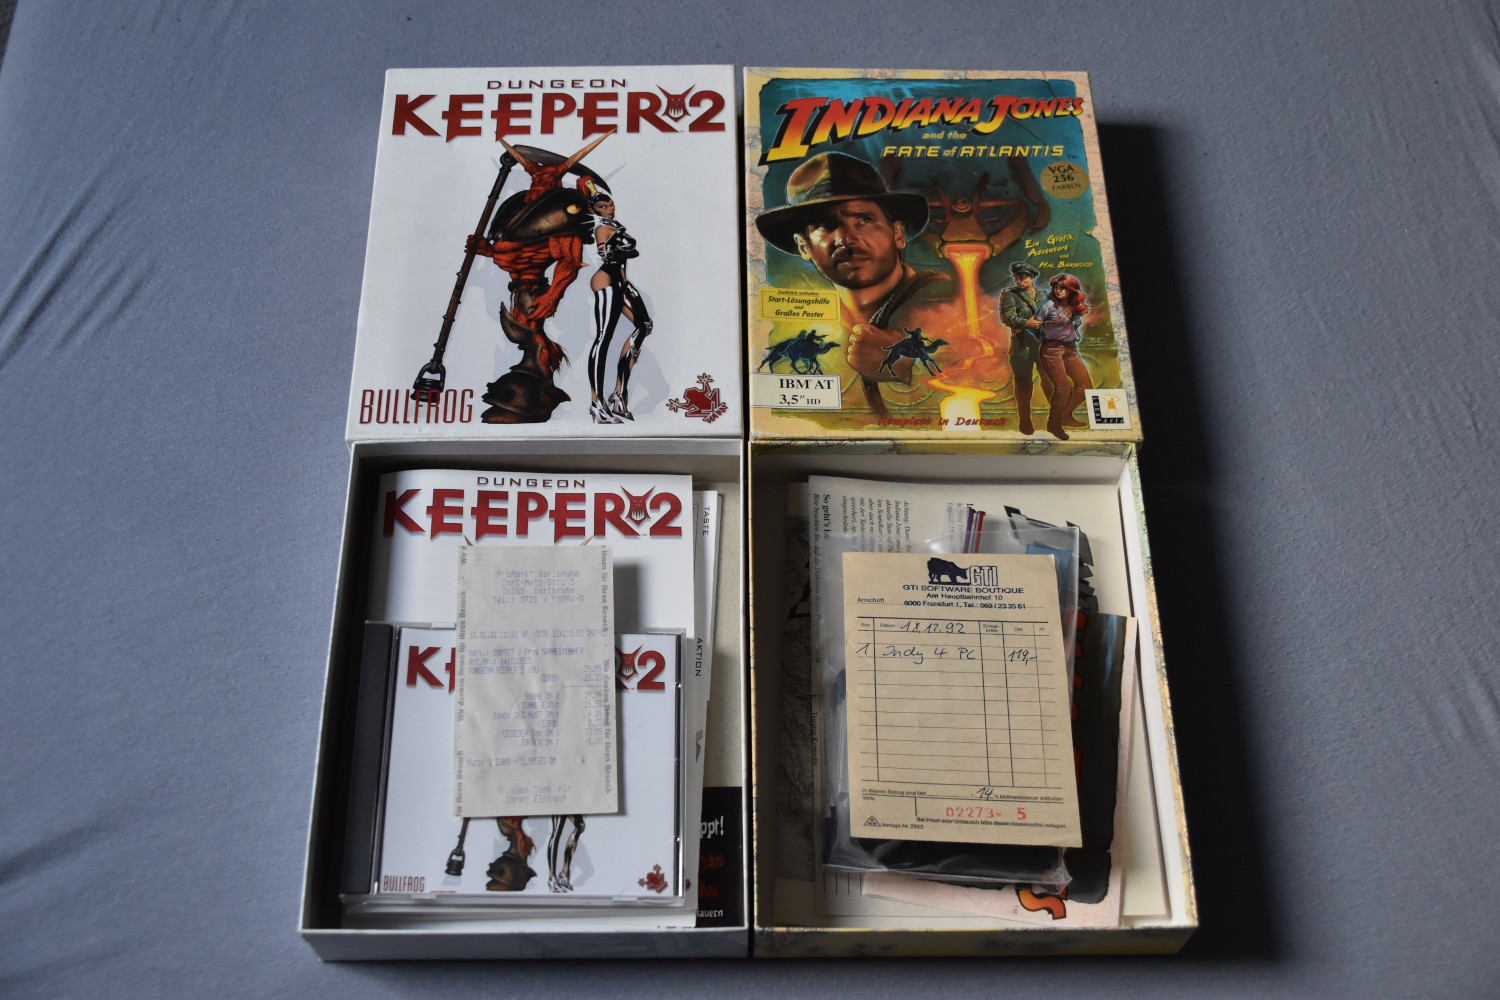 Quittungen in Spielepackungen – etwa hier bei "Dungeon Keeper 2" (1999, links) und "Indiana Jones and the Fate of Atlantis" (1992, rechts) – können trotz weniger Zeichen eine Geschichte erzählen.